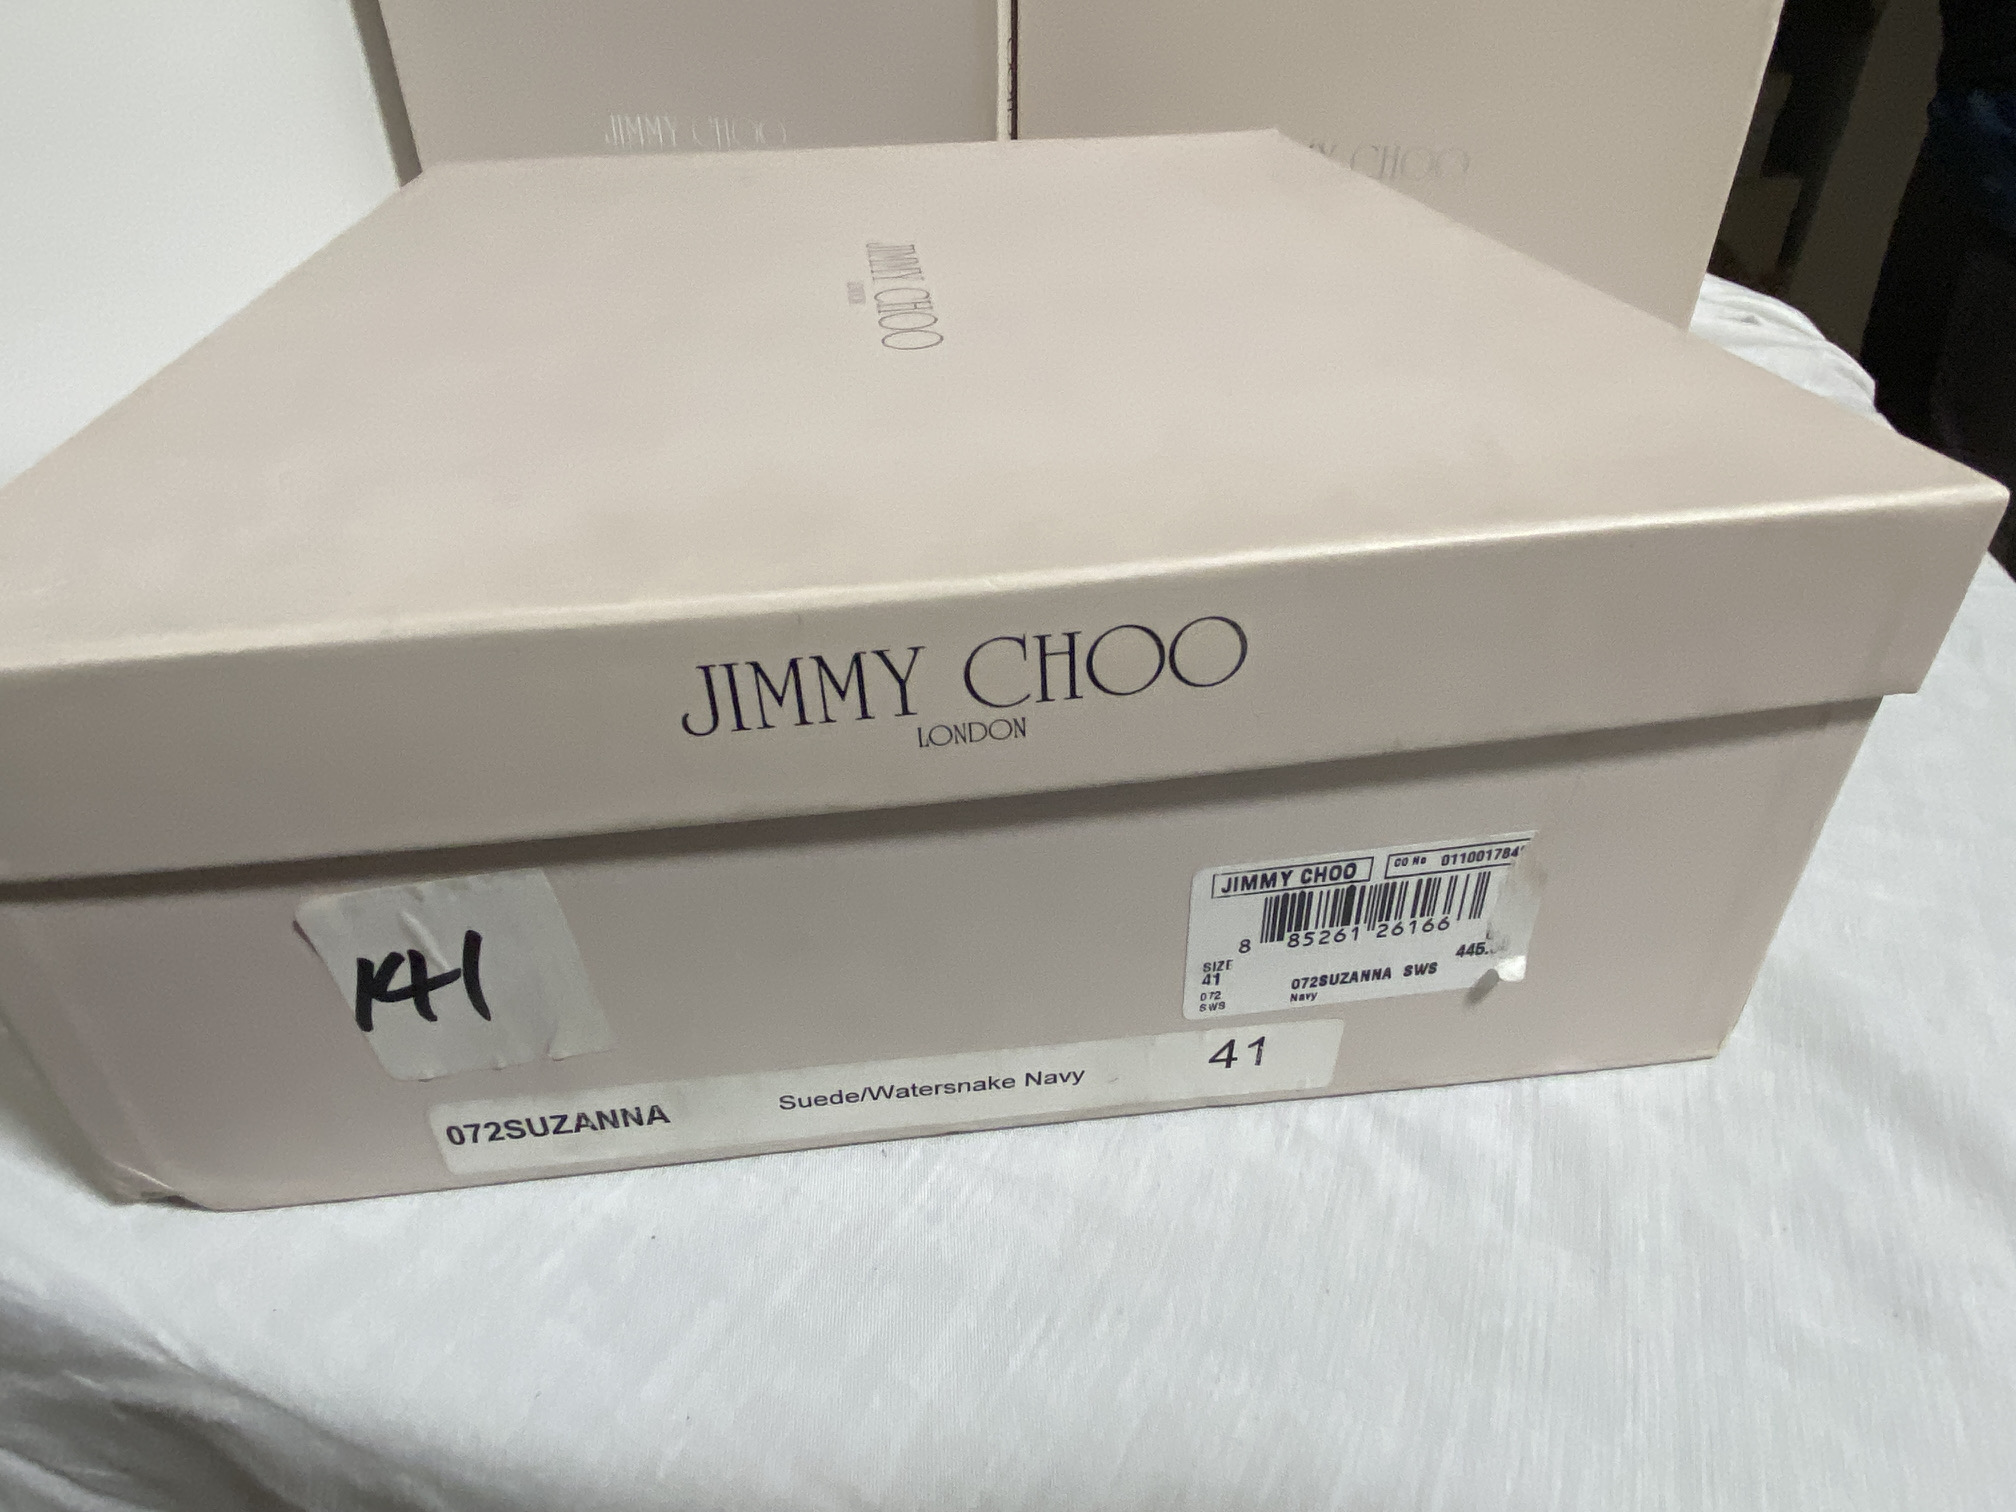 JIMMY CHOO (LONDON) LADIES SHOES / FOOTWEAR (BOXED IN VGC) - Image 2 of 9